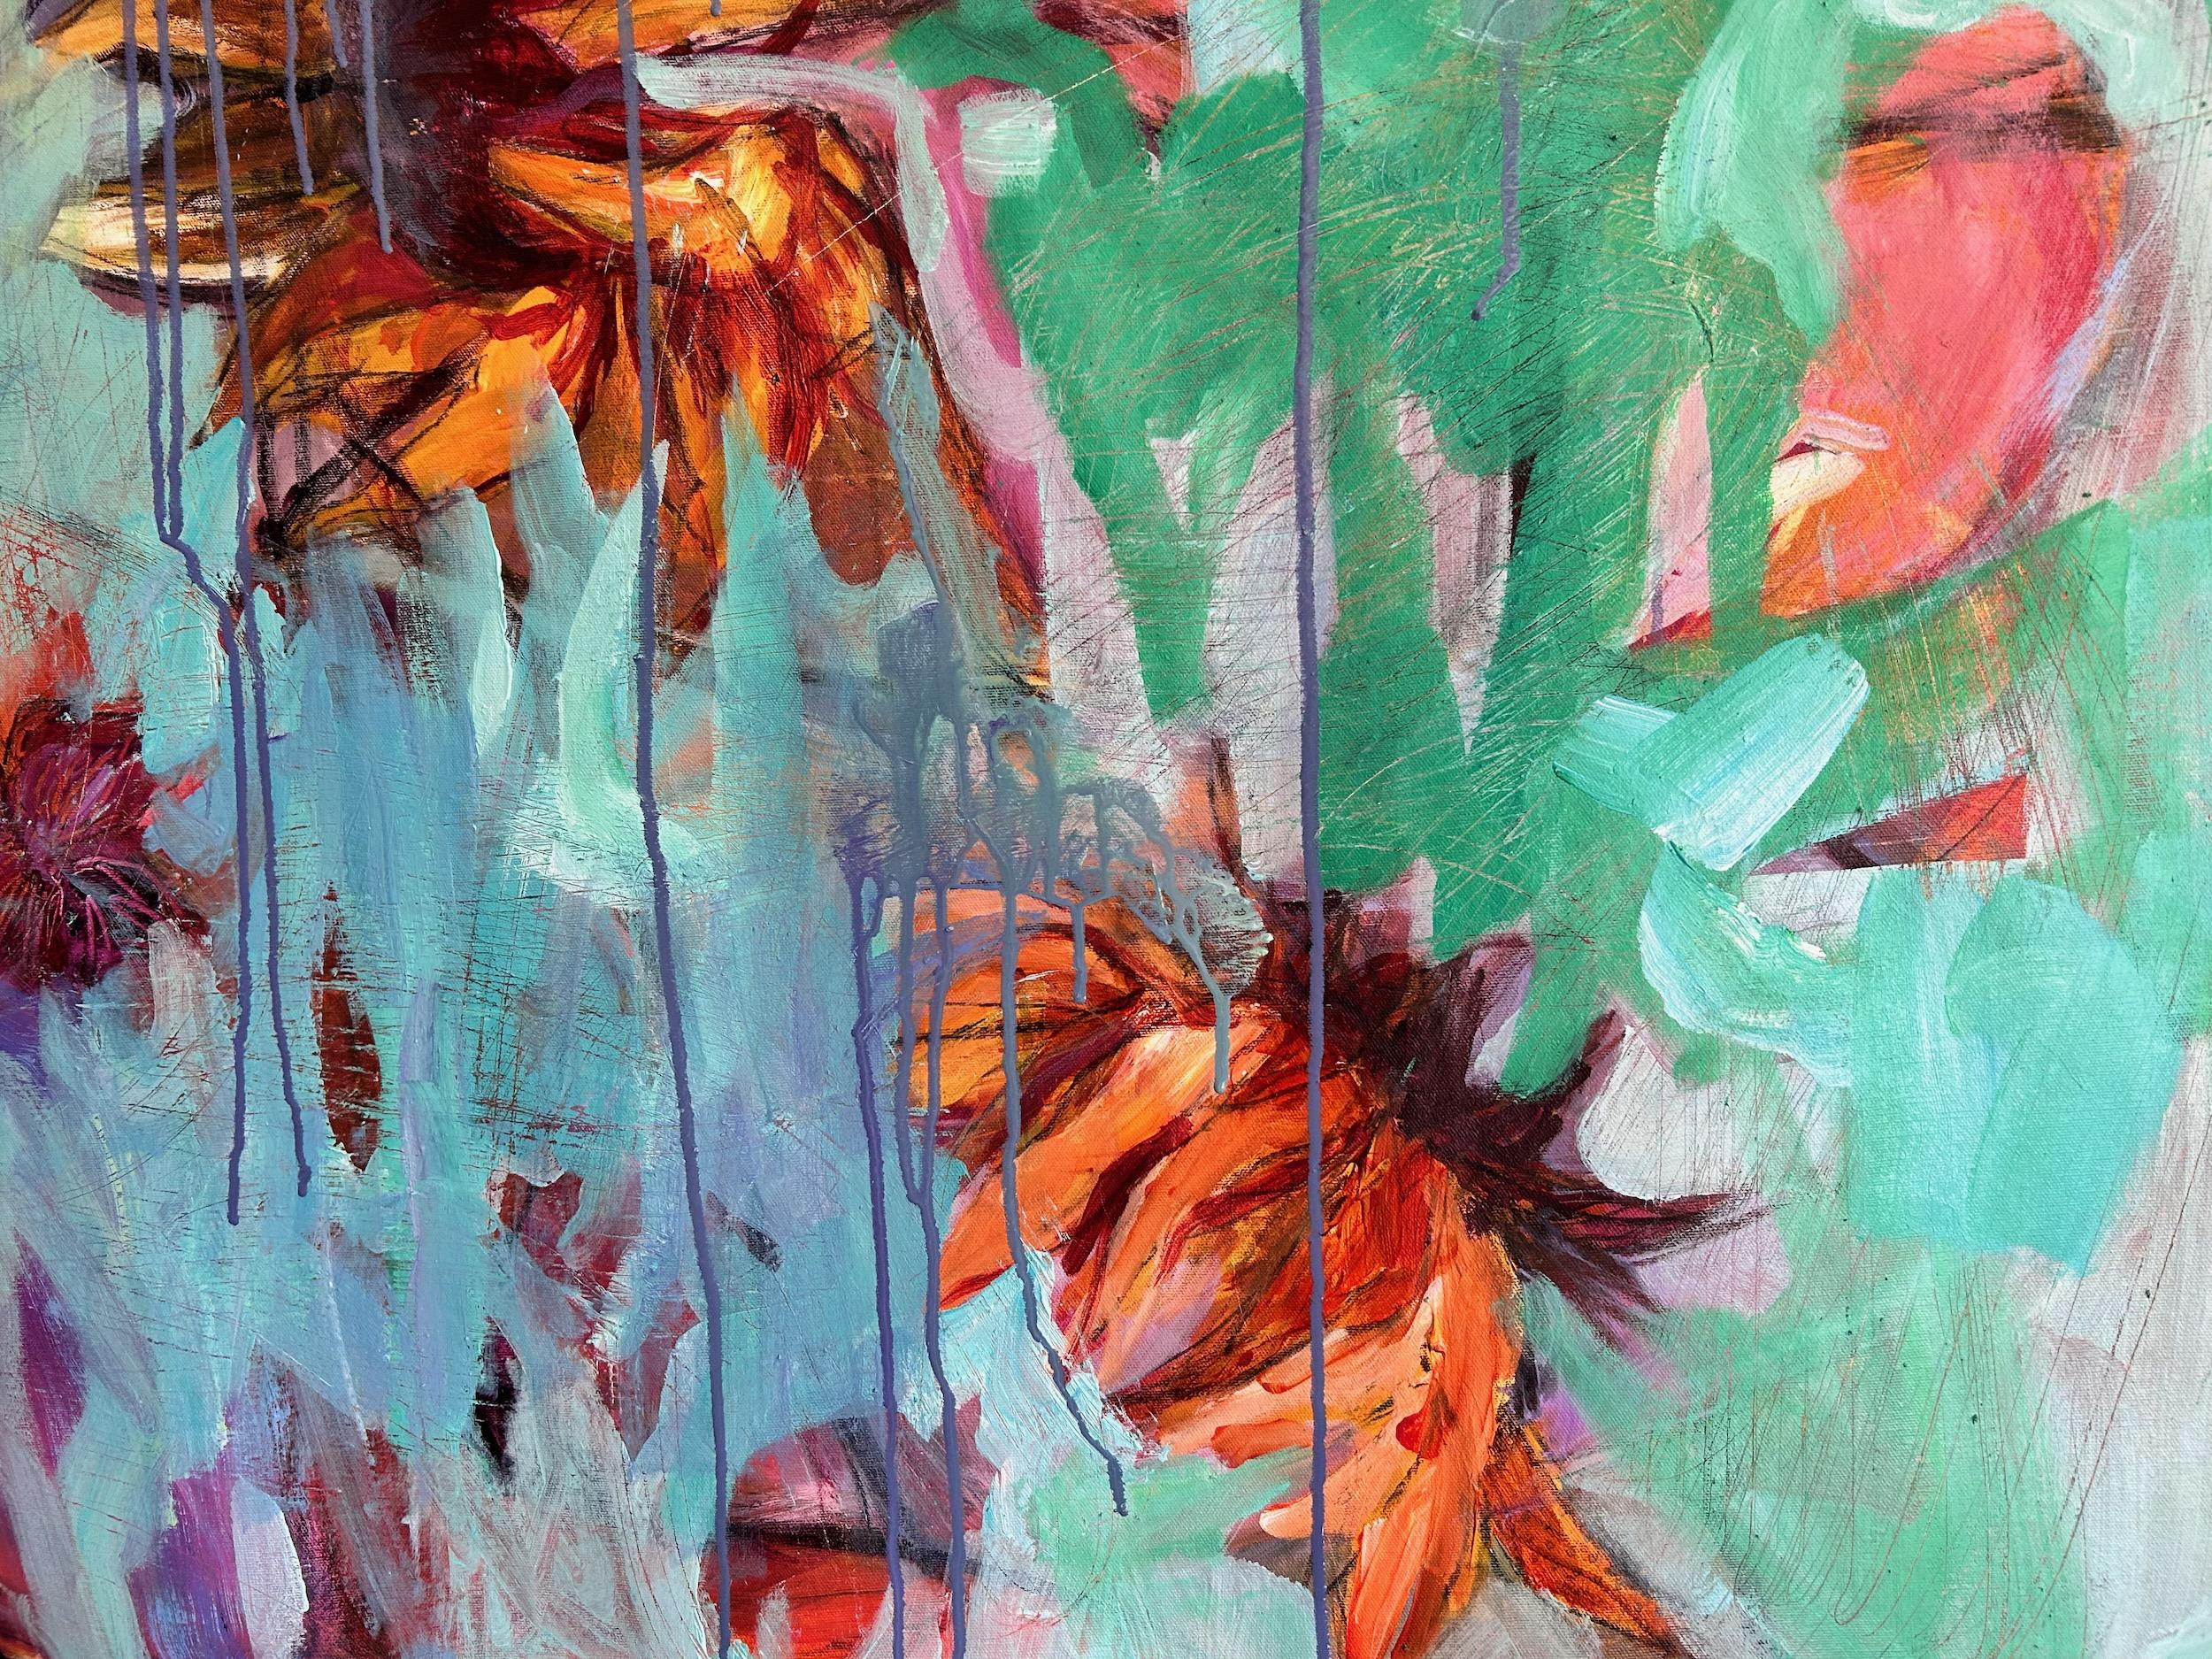 <p>Commentaires de l'artiste<br>L'artiste Julia Hacker présente une œuvre abstraite florale composée de tournesols qui semblent suspendus dans l'air. Des teintes sereines et calmes de bleu et de sarcelle enveloppent les fleurs naissantes, masquant